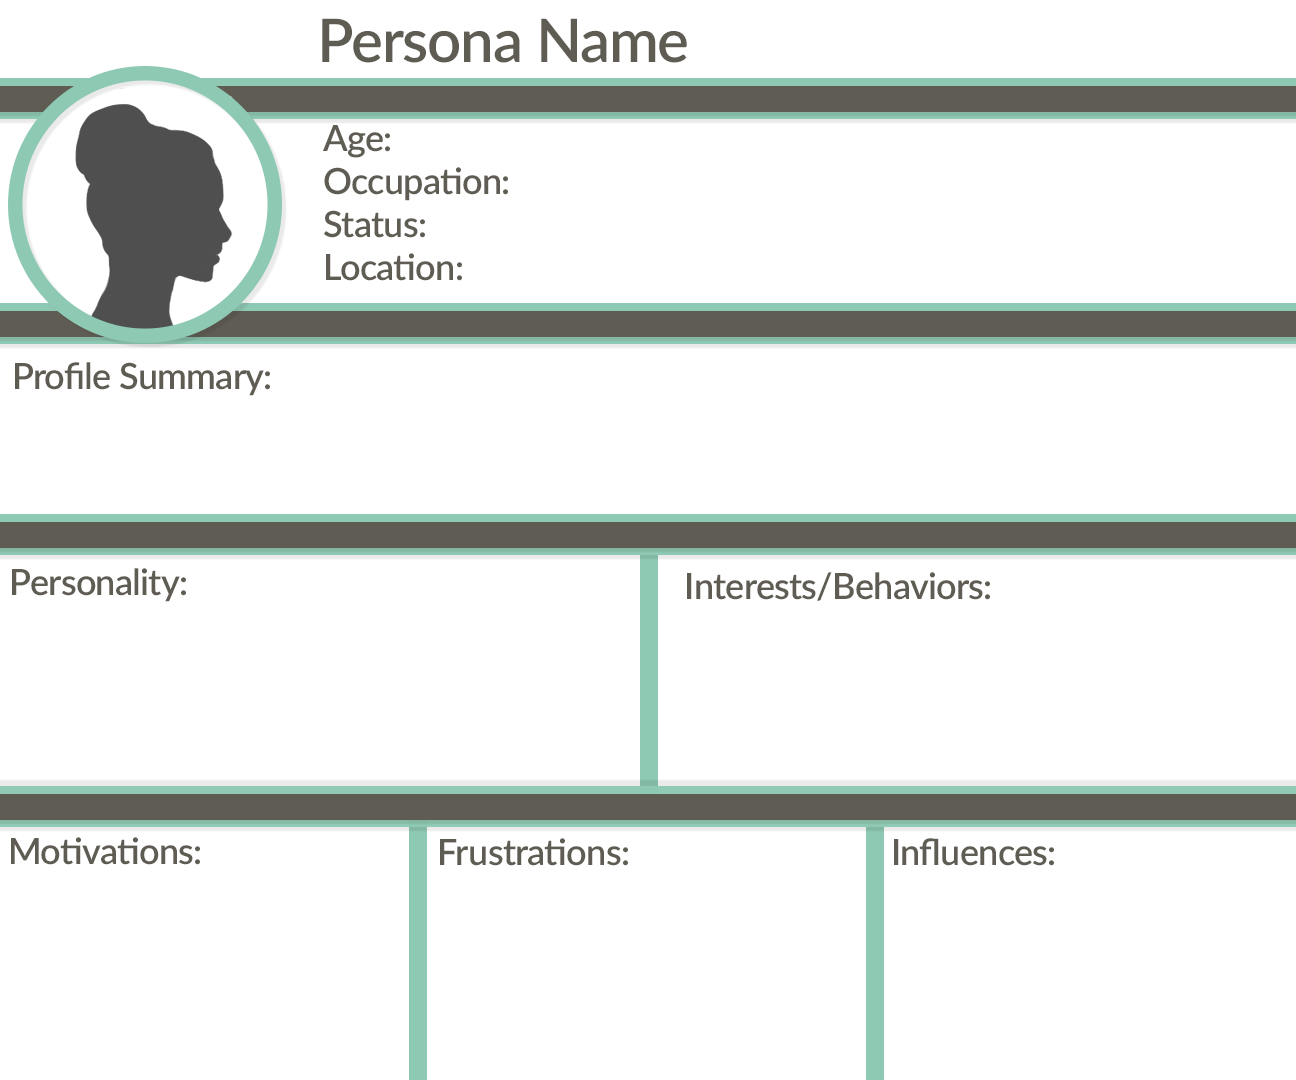 Persona Profile